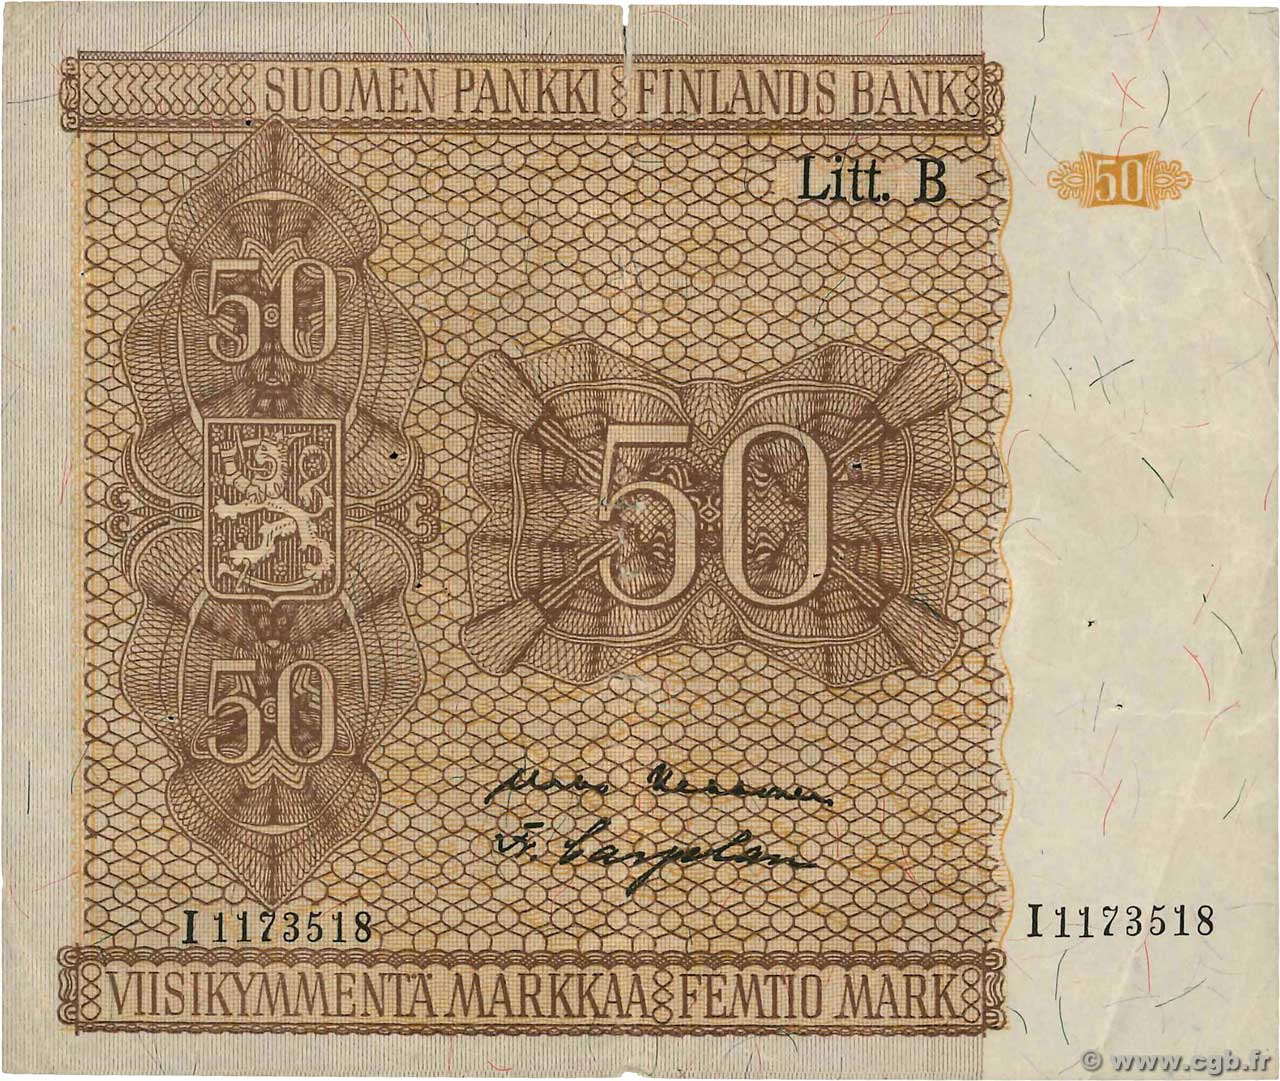 50 Markkaa FINLAND  1945 P.087 VF